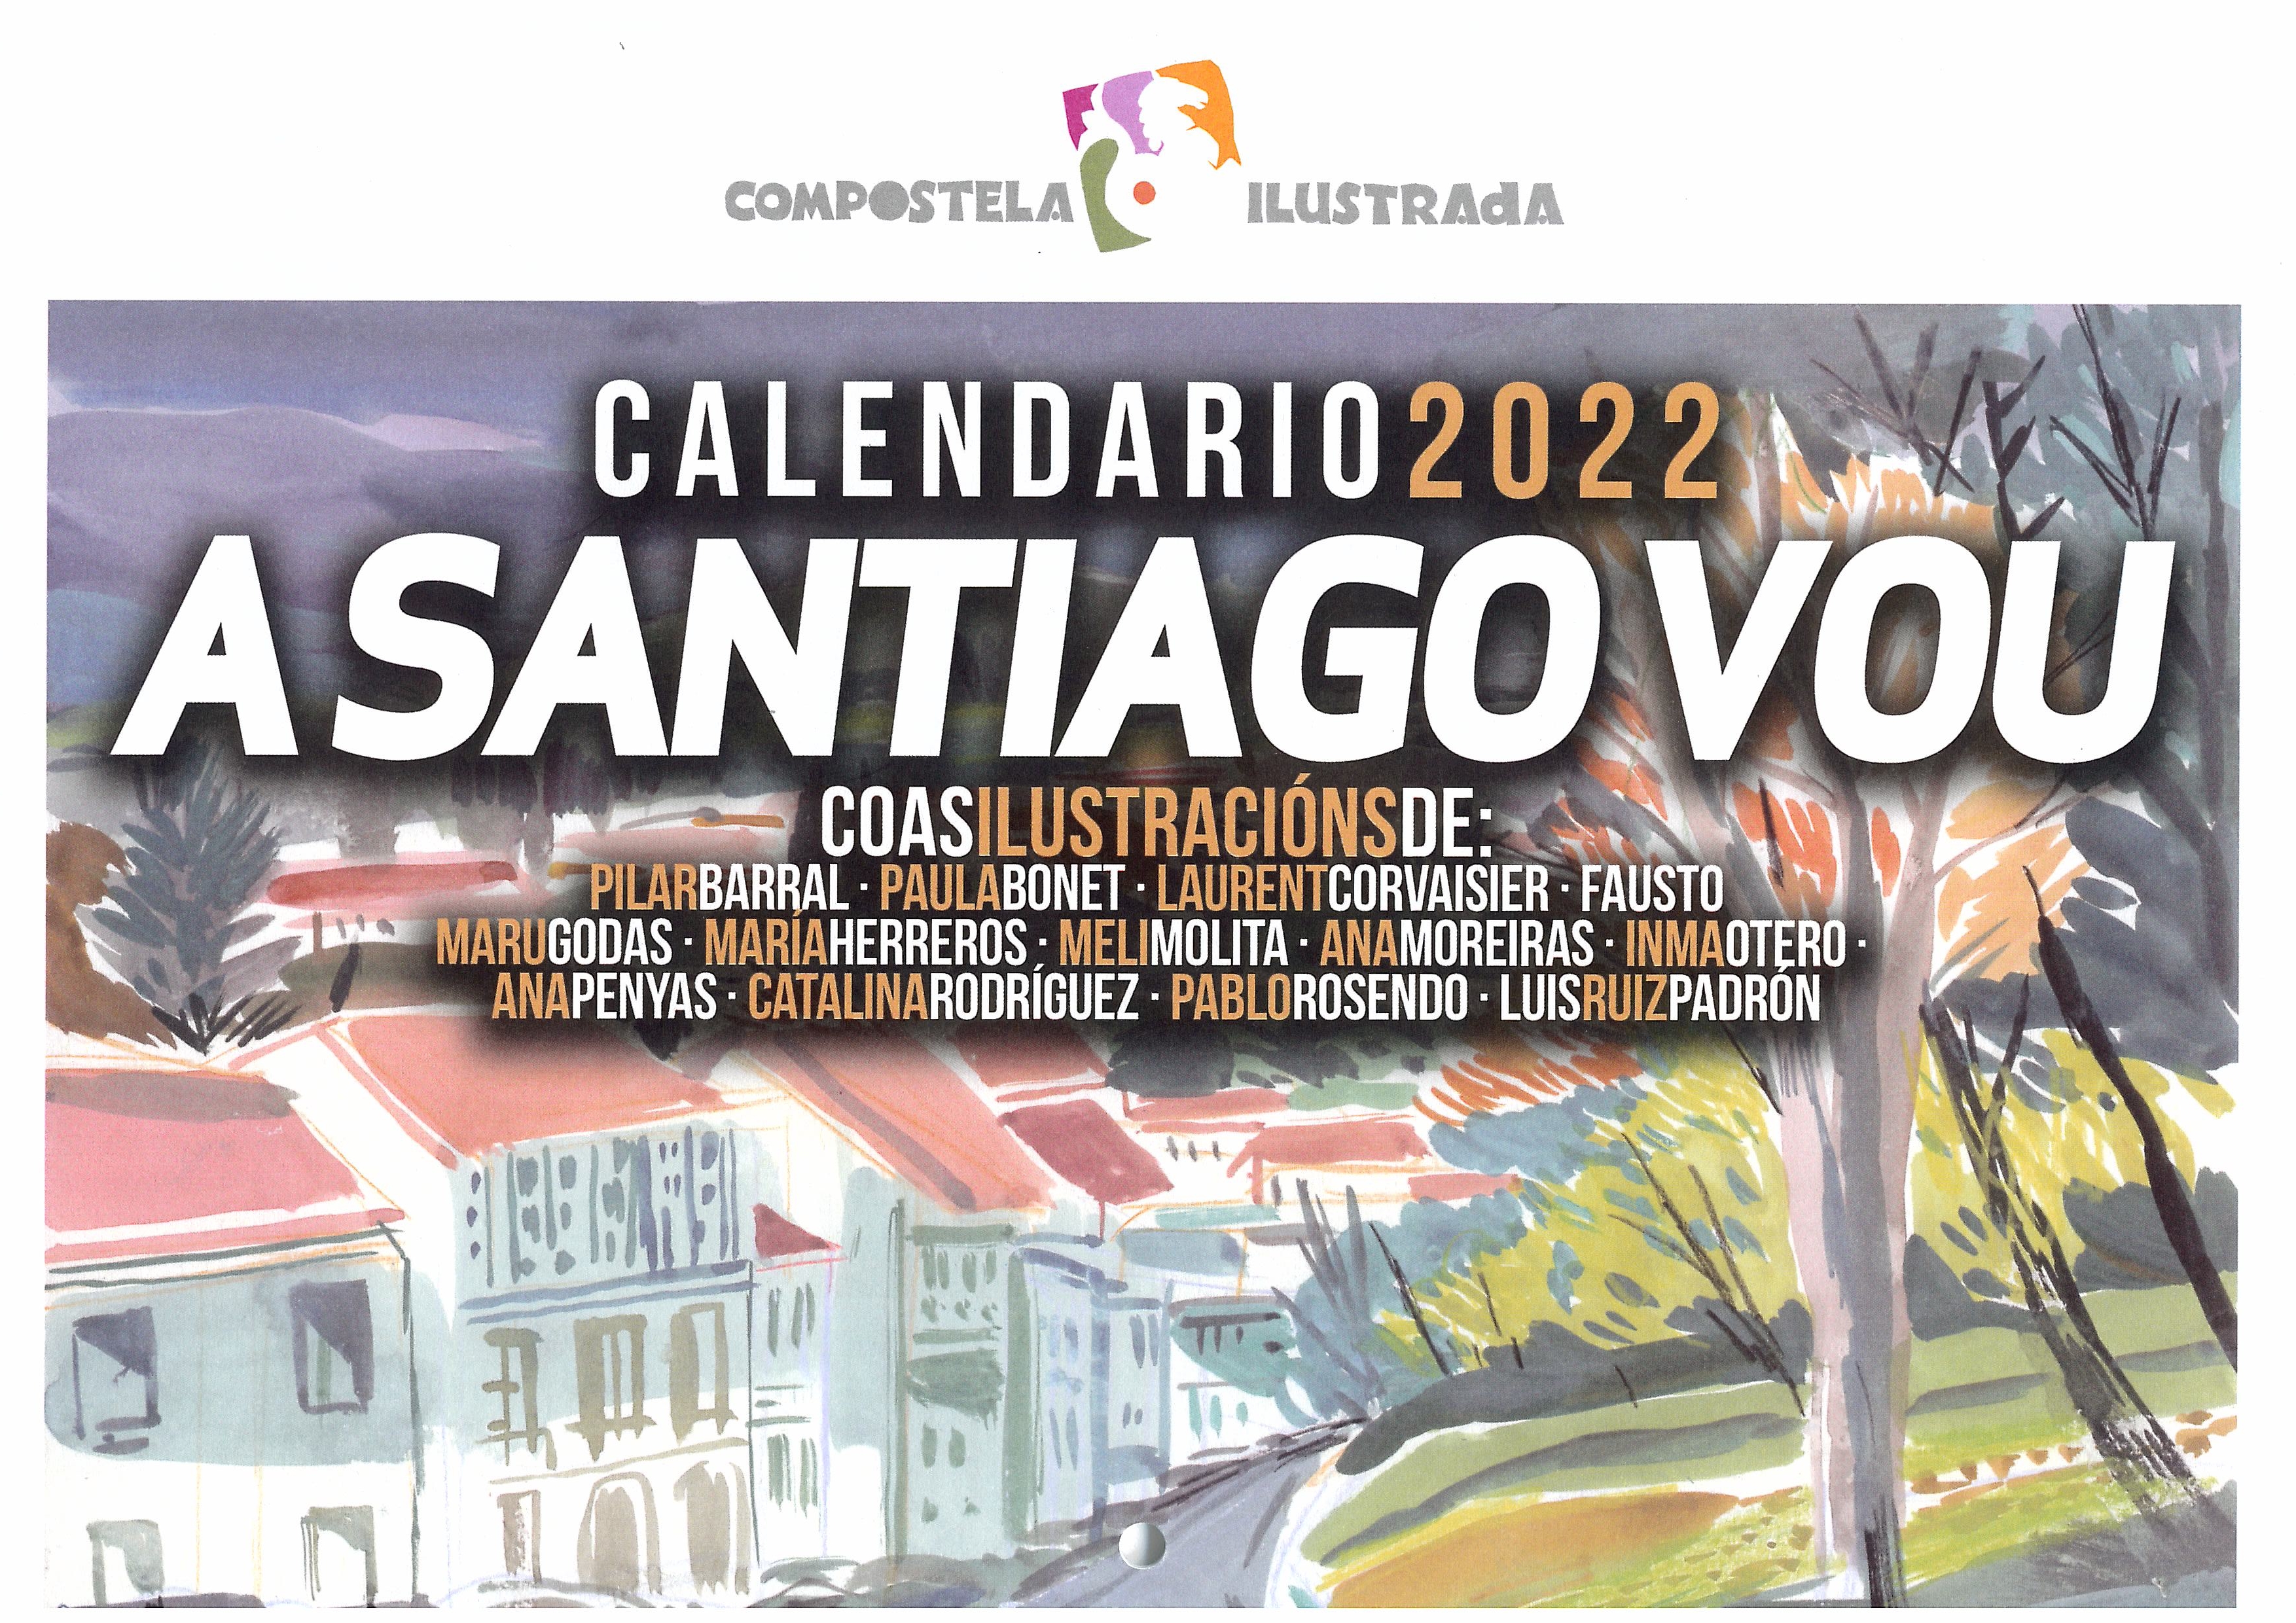 CALENDARIO A SANTIAGO VOU 2022